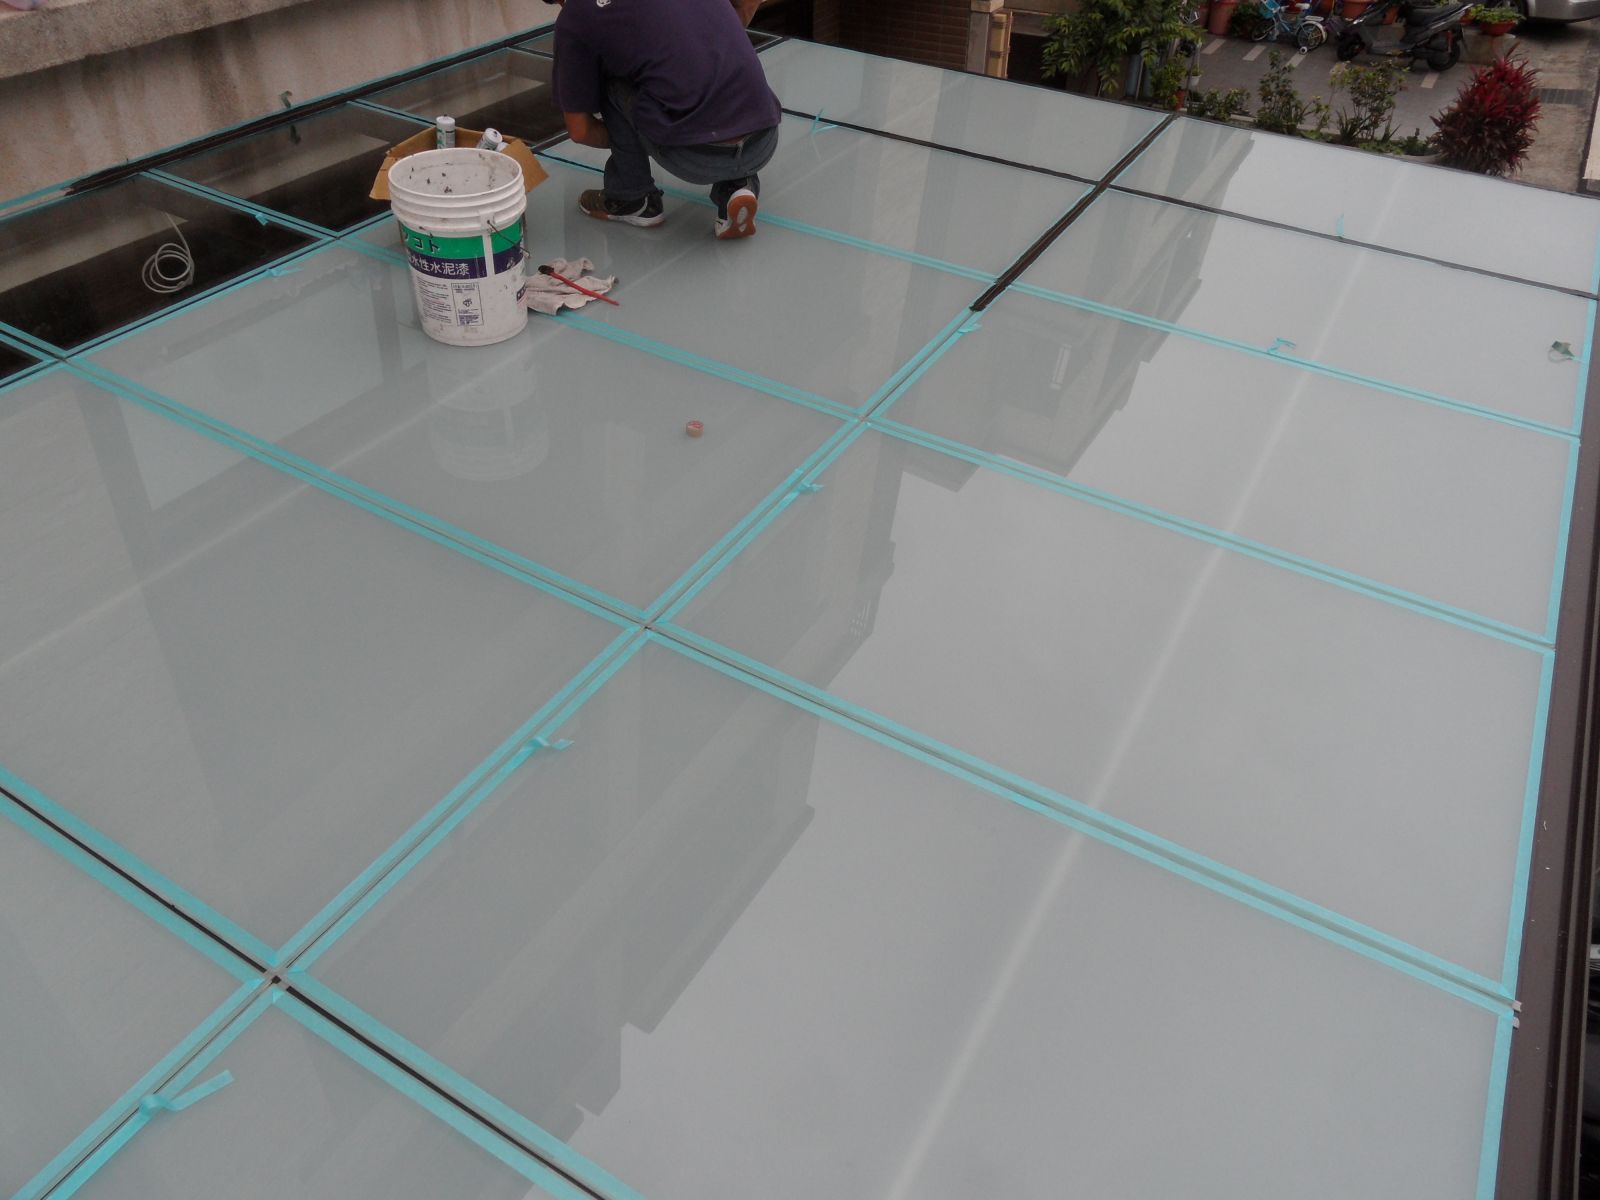 屋頂玻璃採用5+5膠合玻璃,以紙膠帶將玻璃四周黏貼